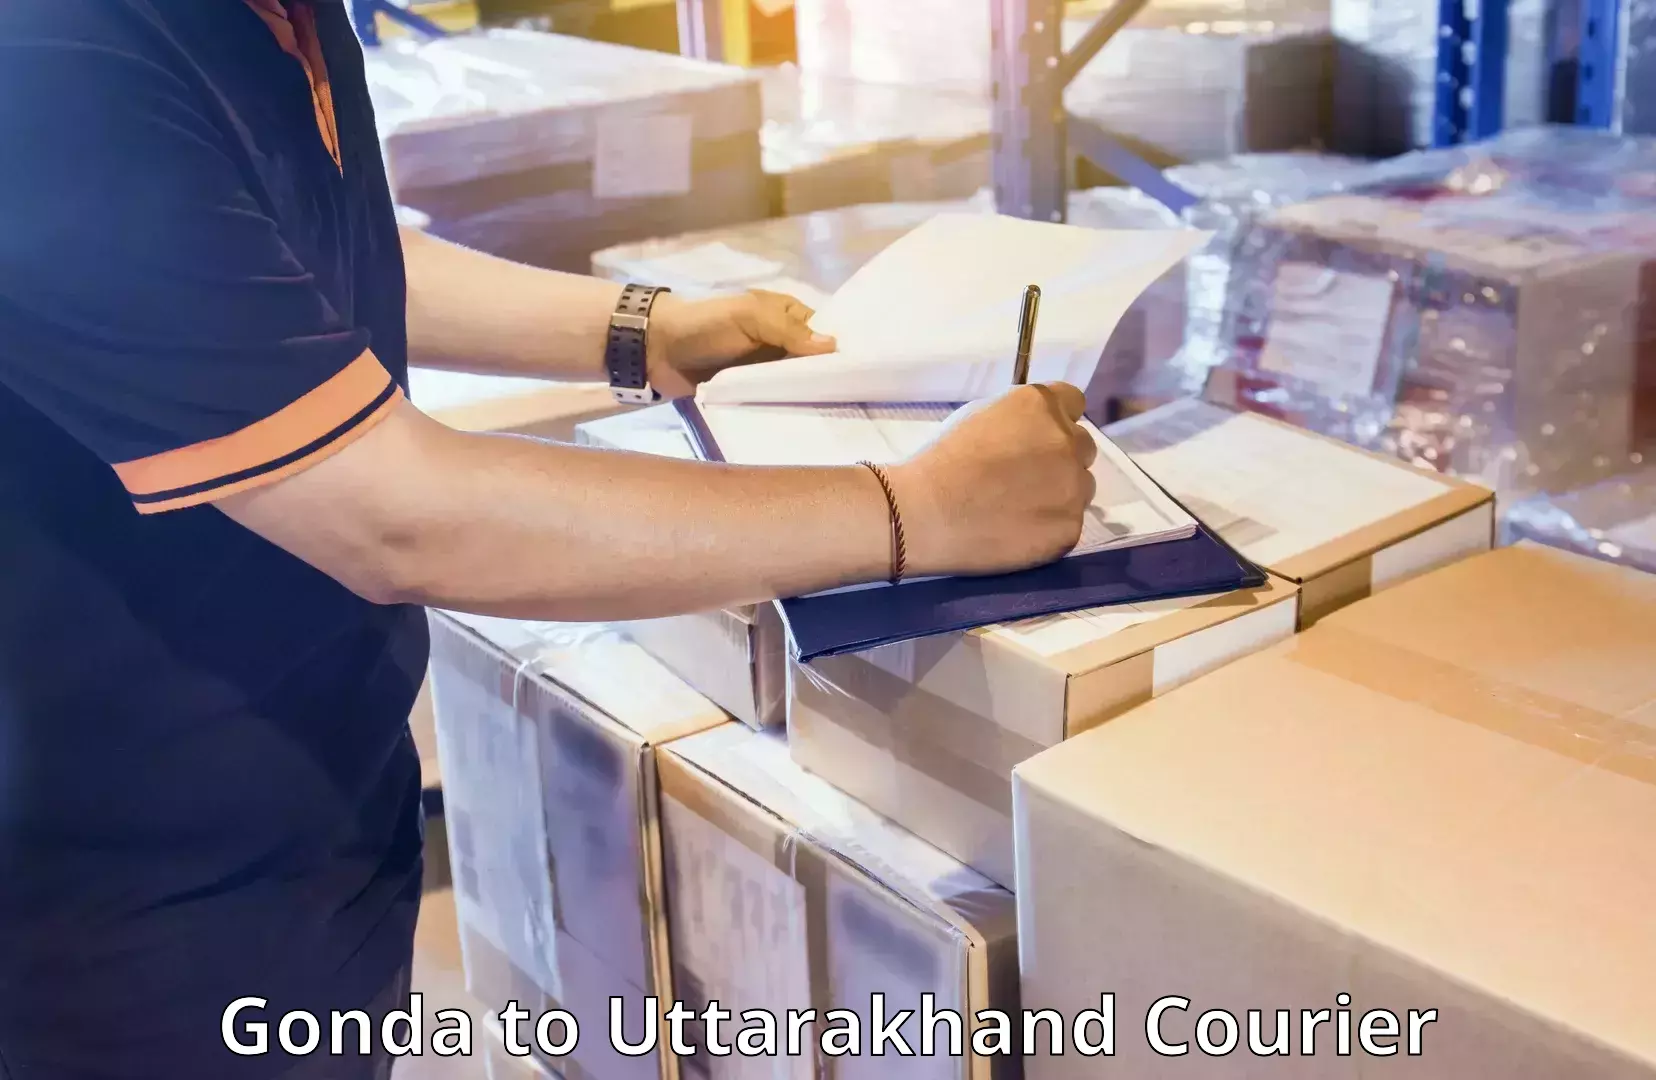 Luggage delivery providers Gonda to Uttarakhand